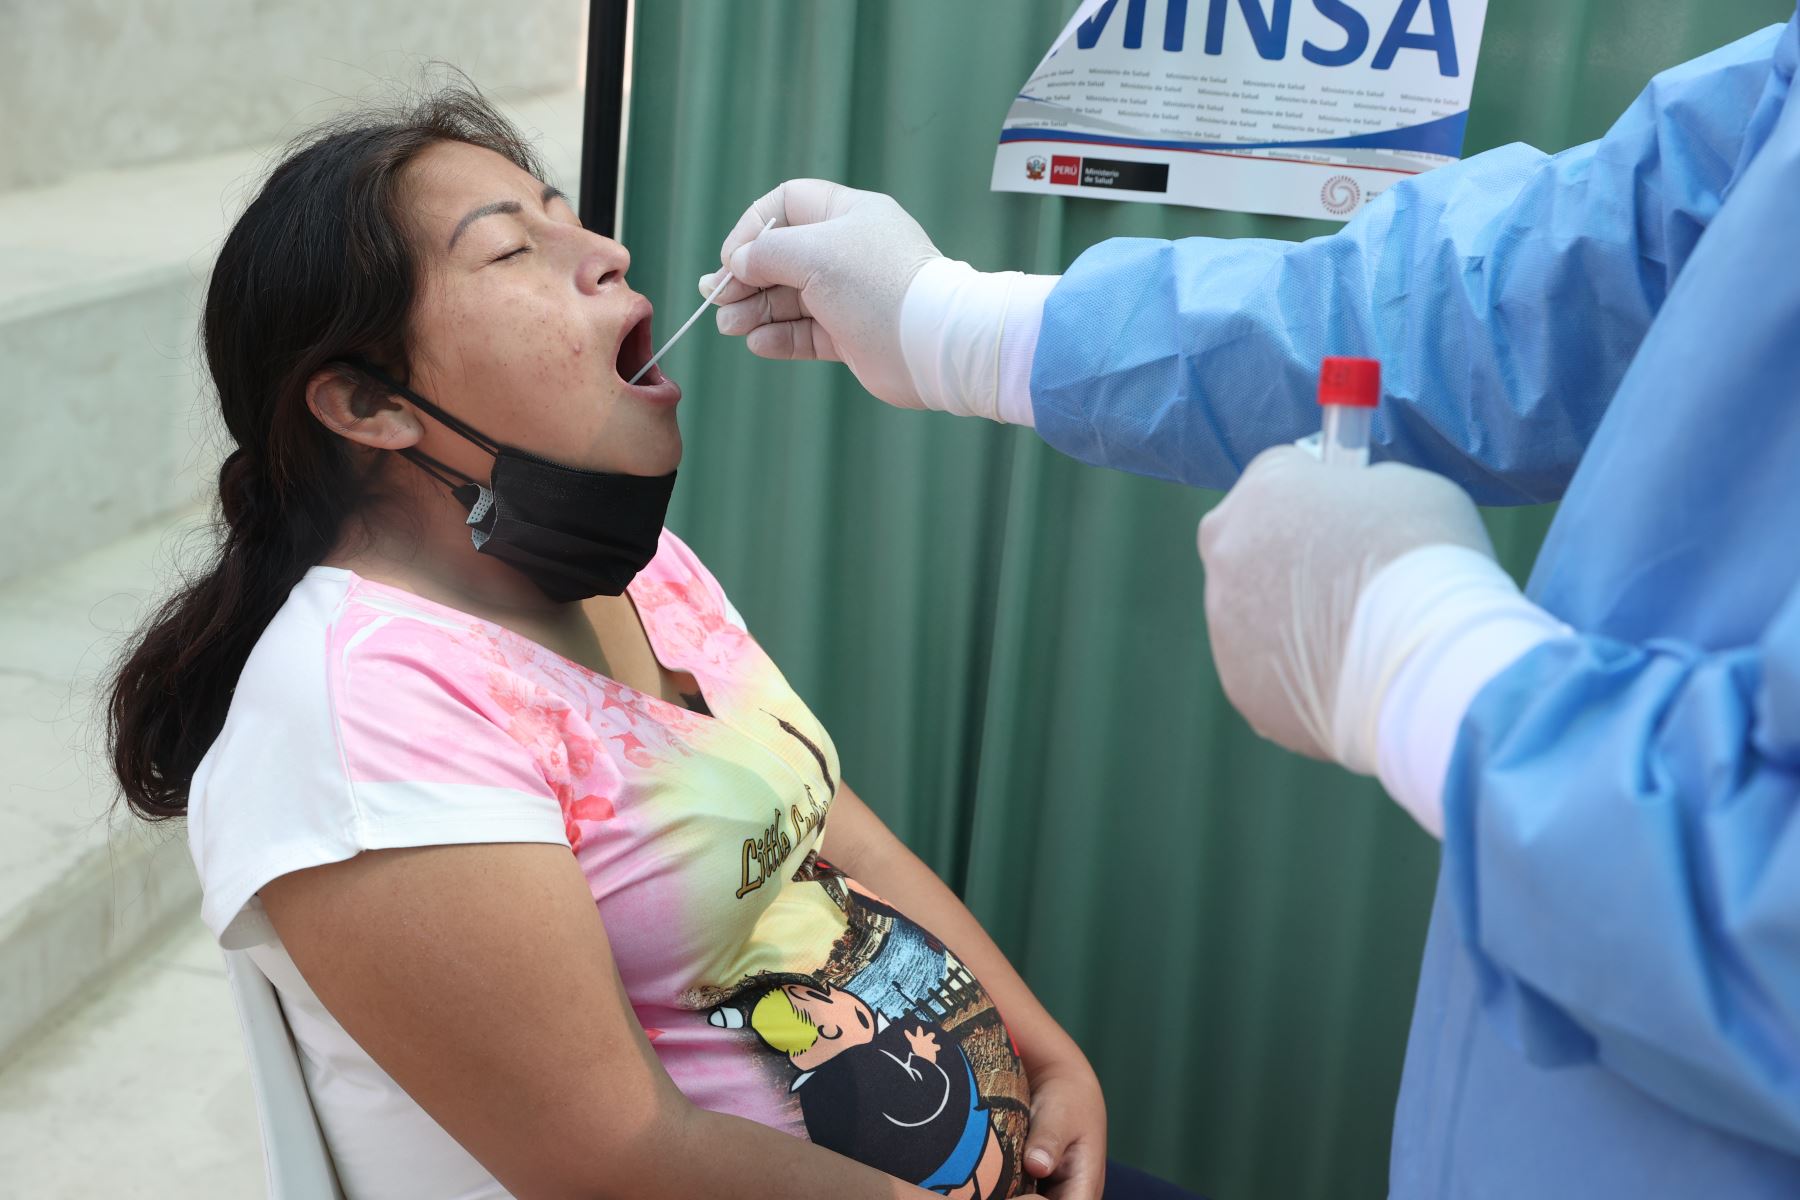 Minsa acerca pruebas moleculares y vacunación contra la COVID-19 a la población de Huaycán